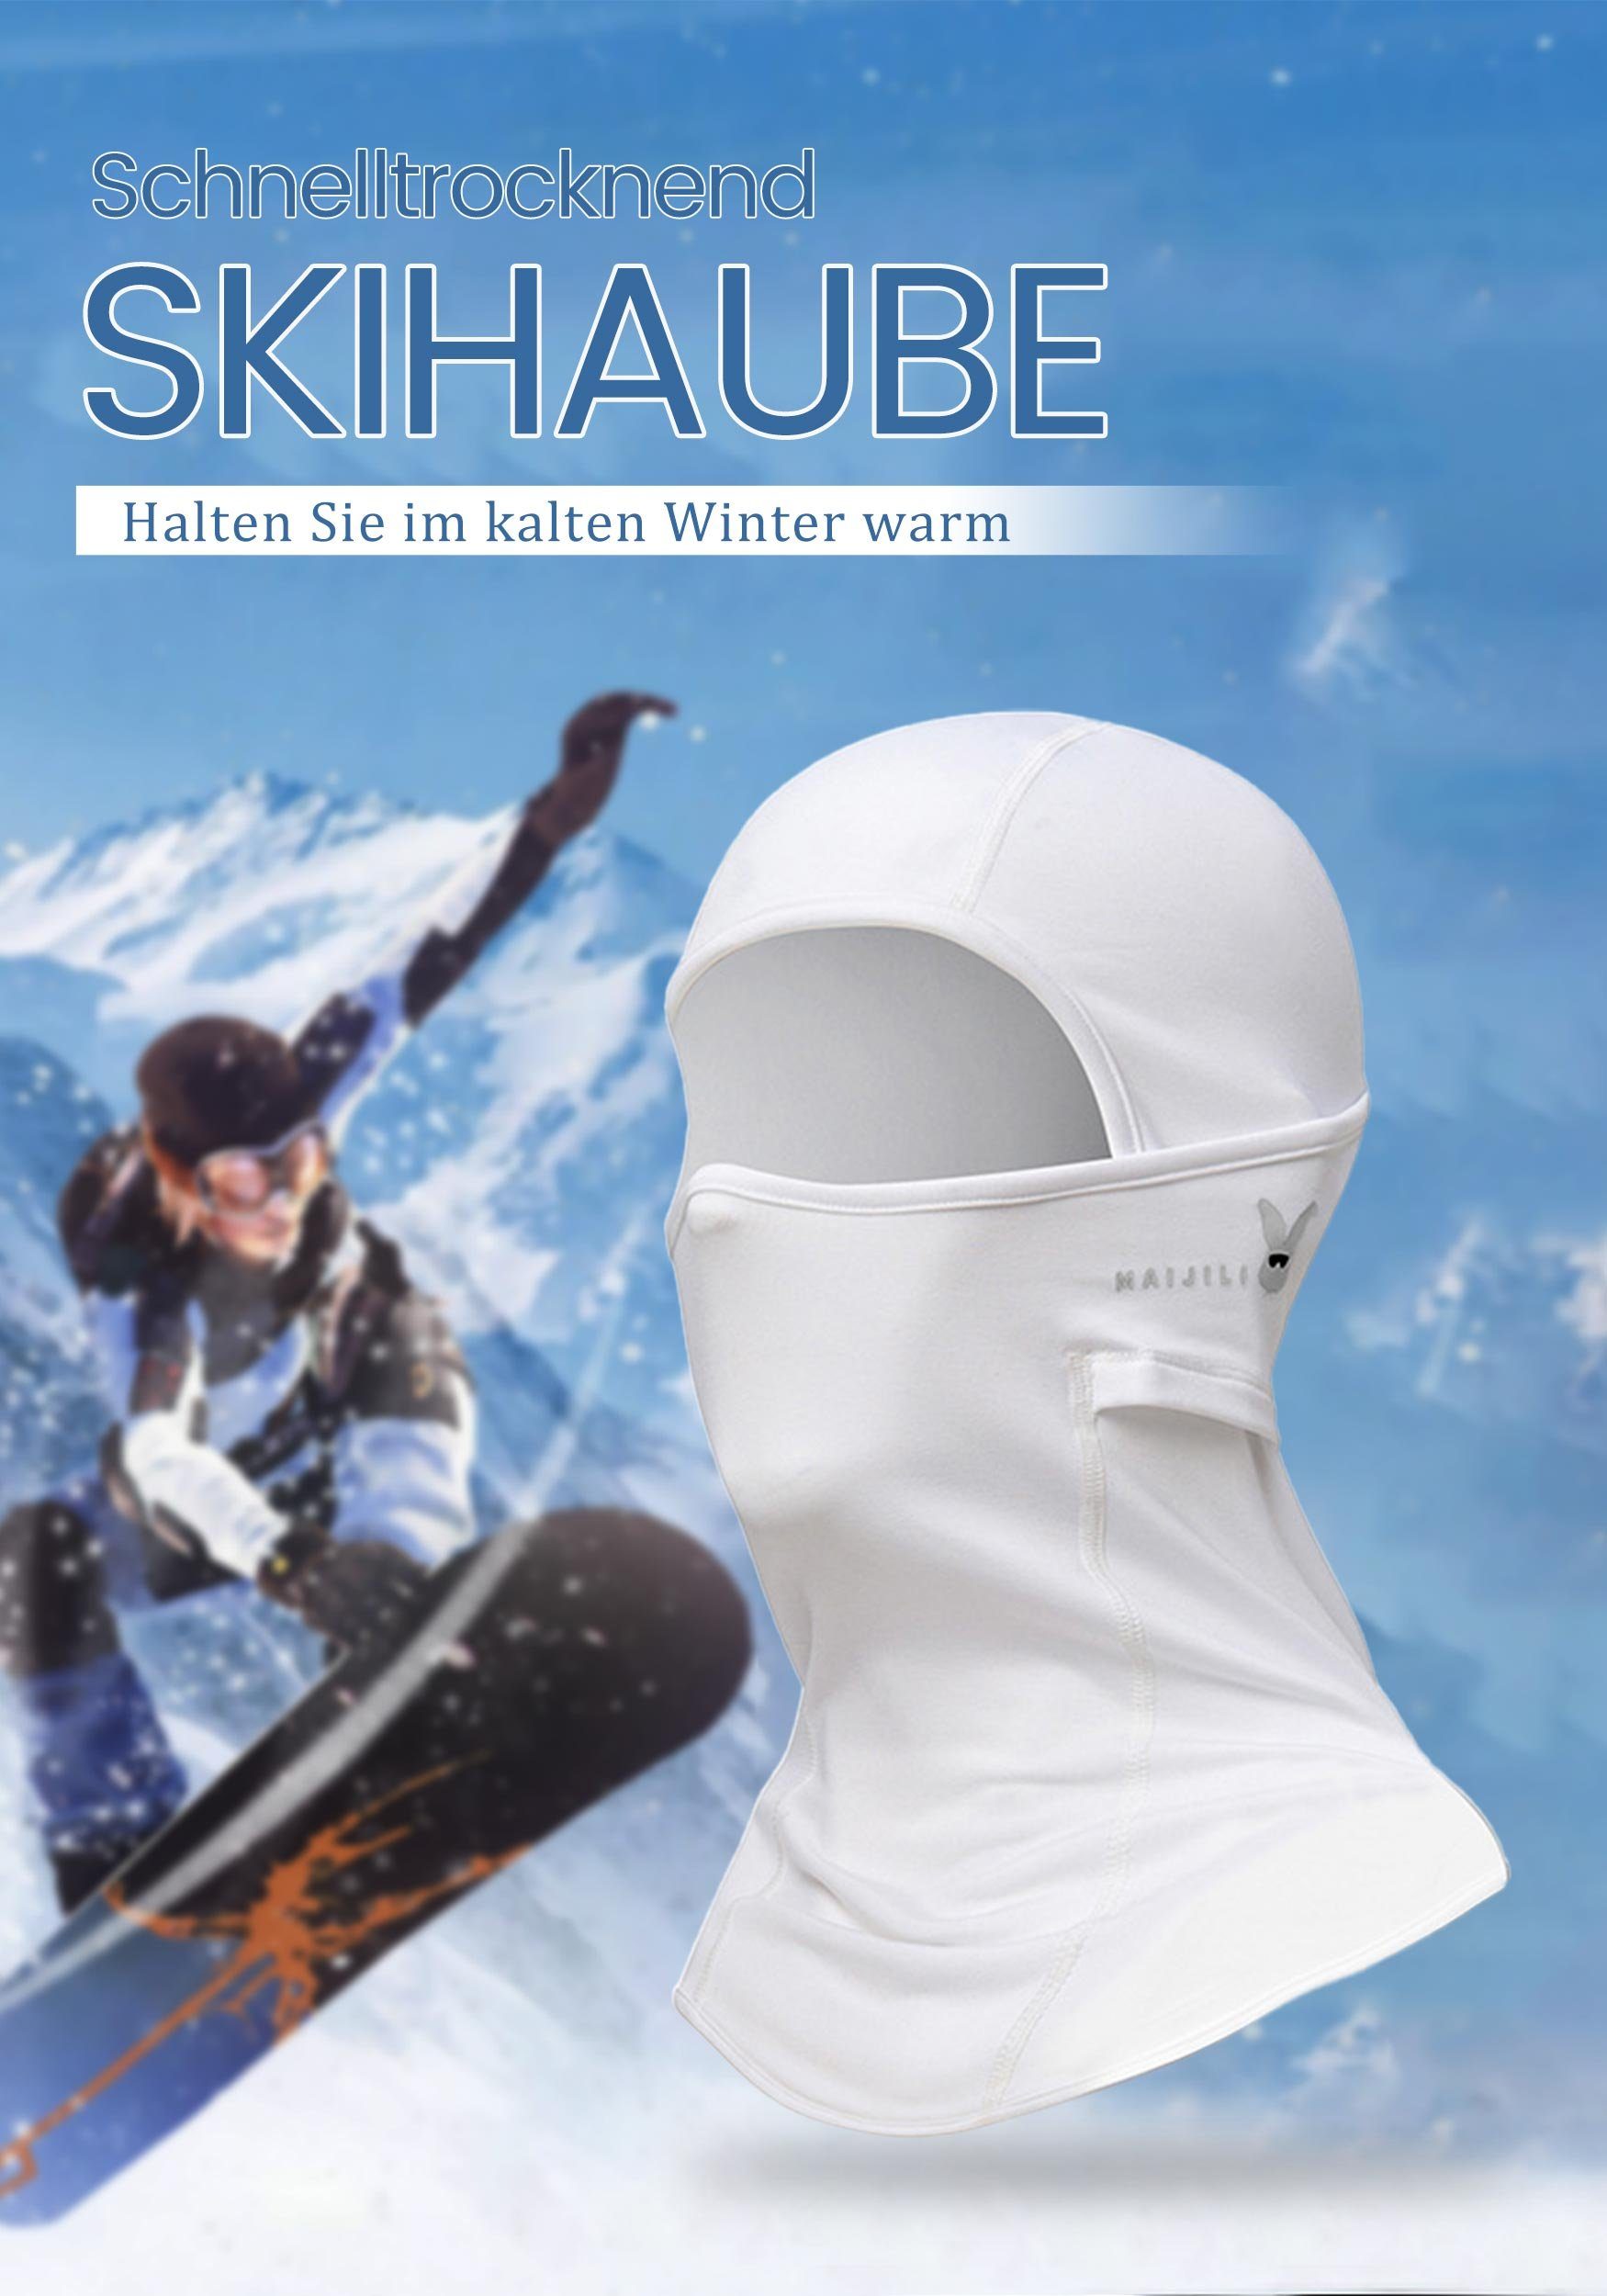 Schutz UV-Strahlen Umfassenden Sturmhaube für MAGICSHE Skimaske Weiß Widersteht